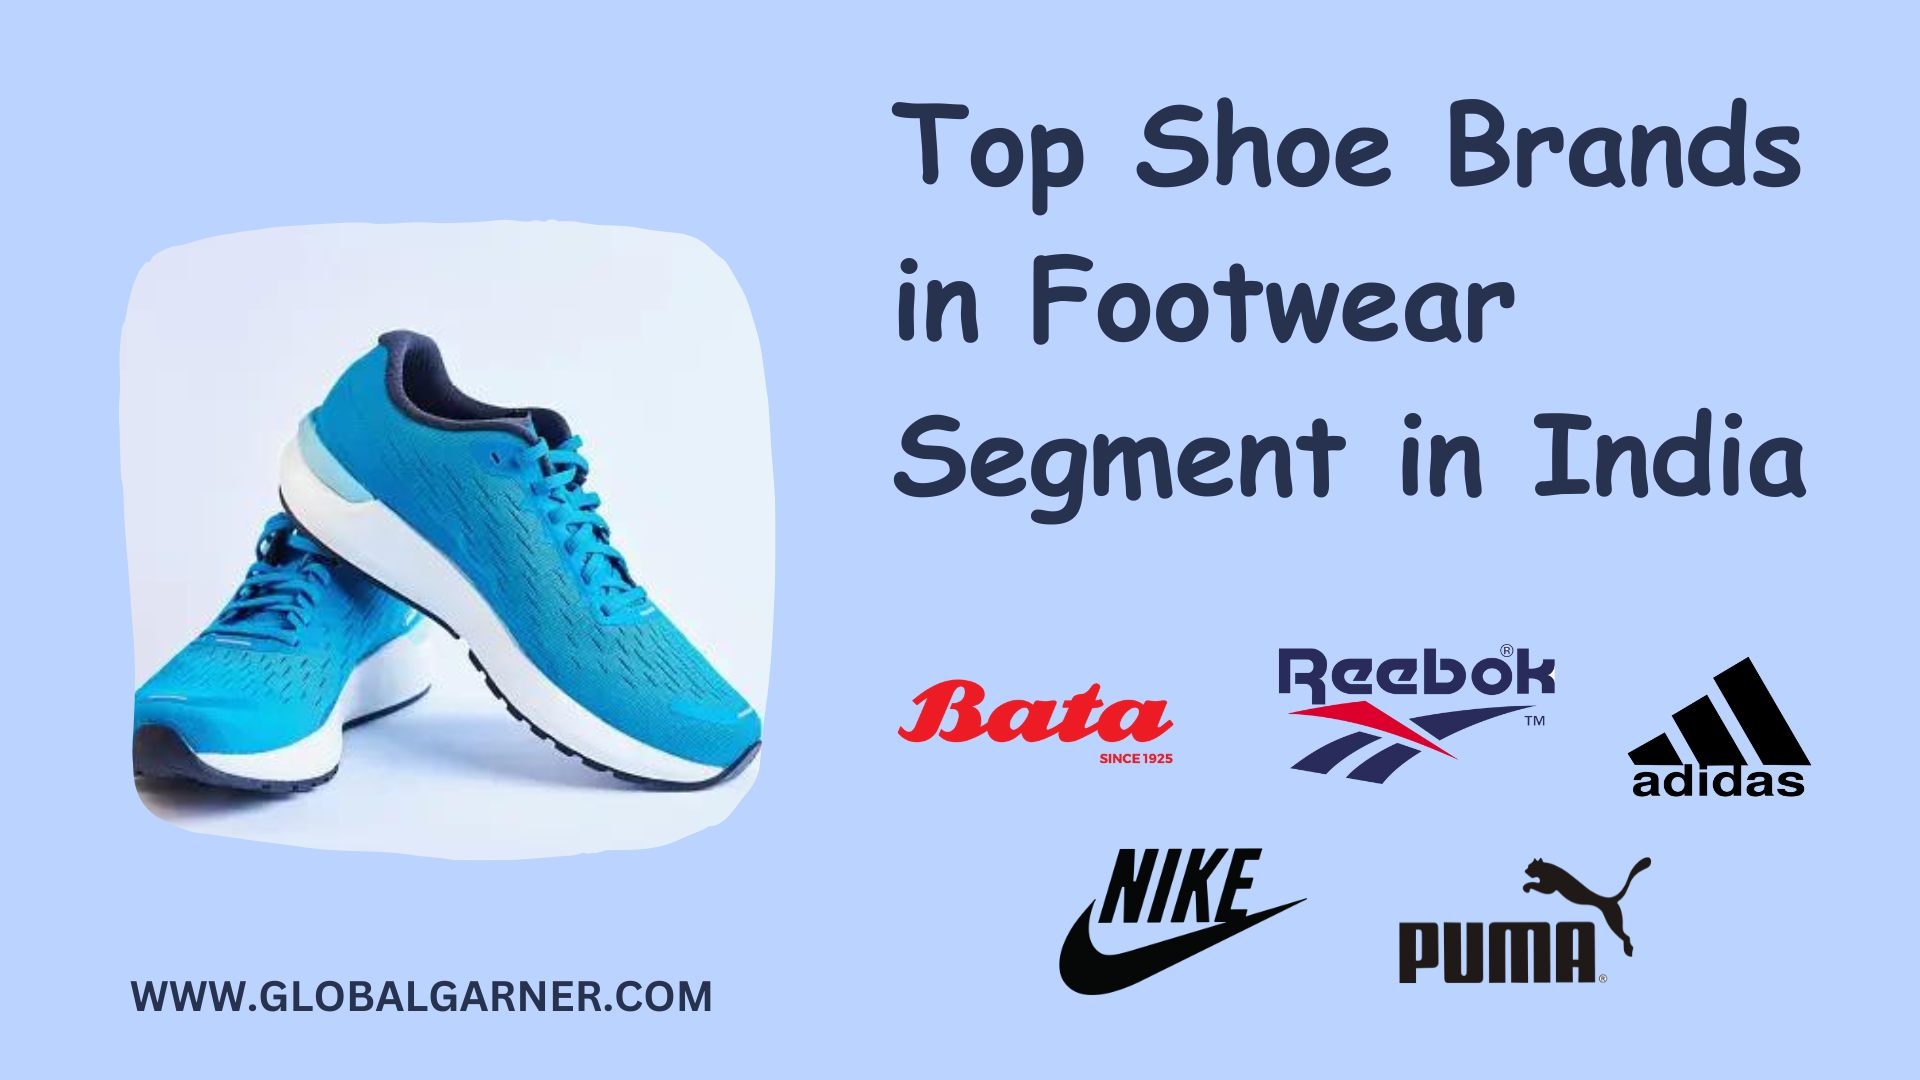 Top Shoe Brands in Footwear Segment in India